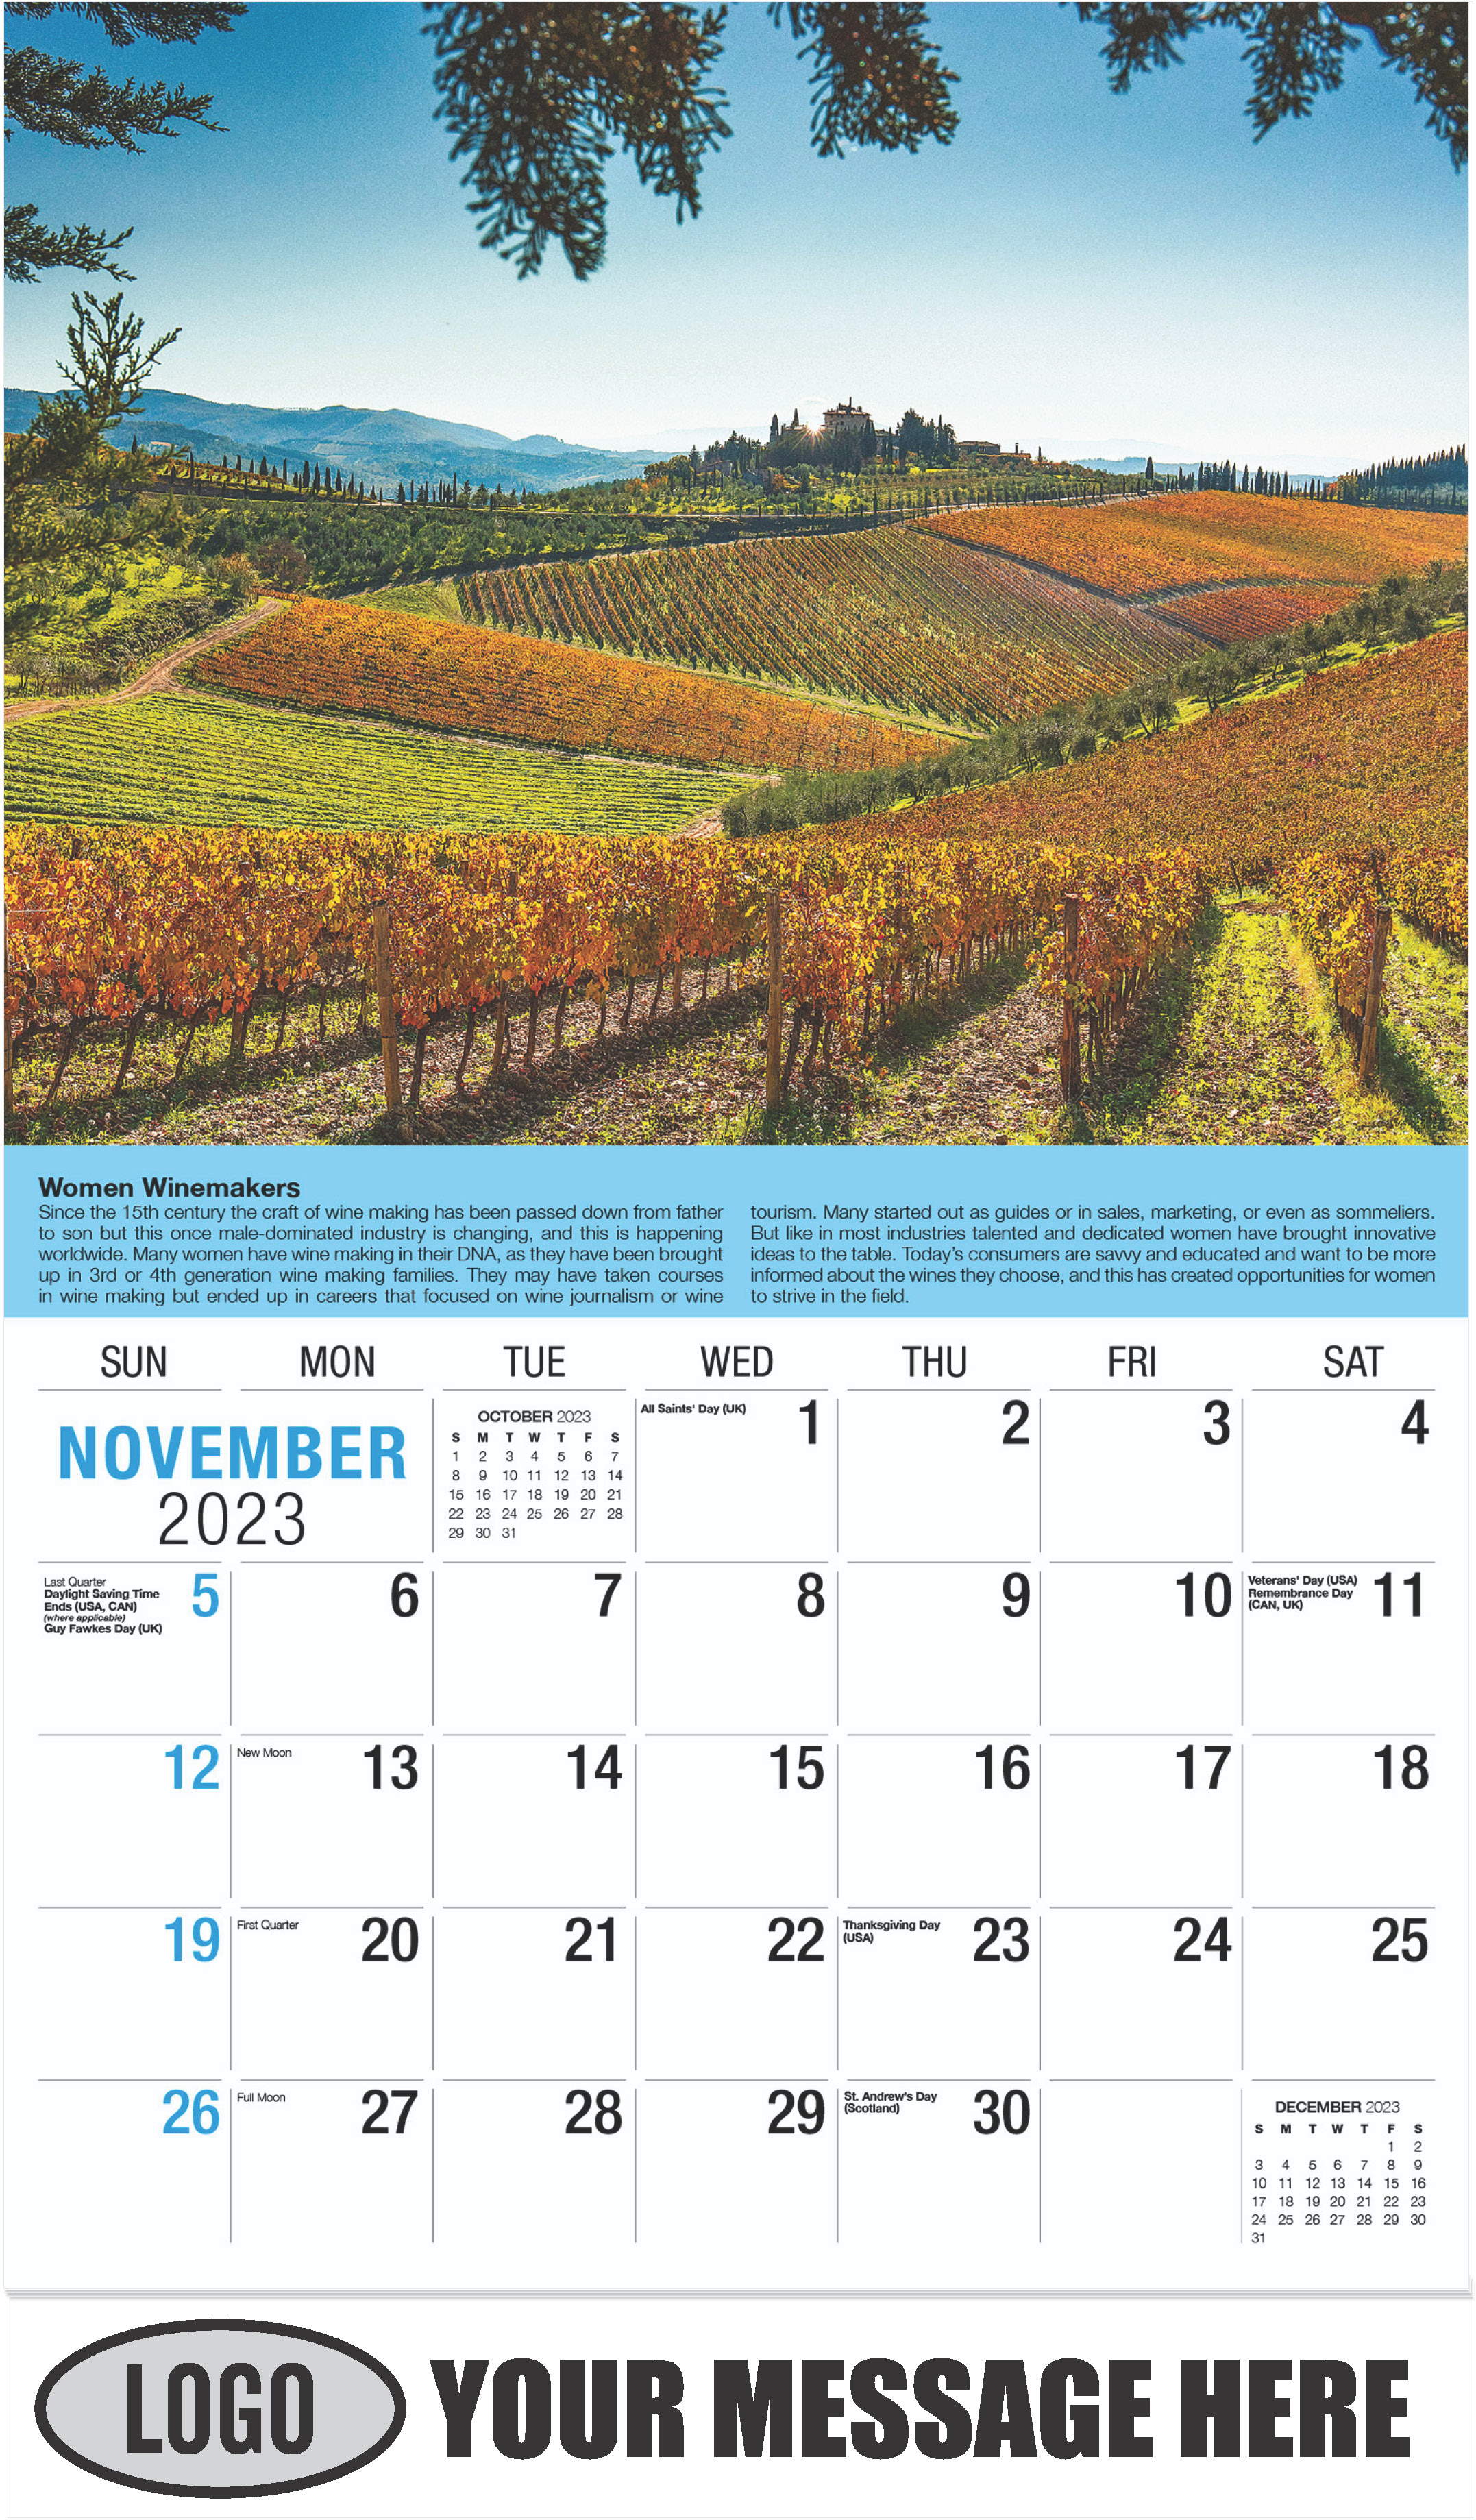 Wine Tips Calendar - November - Vintages 2023 Promotional Calendar